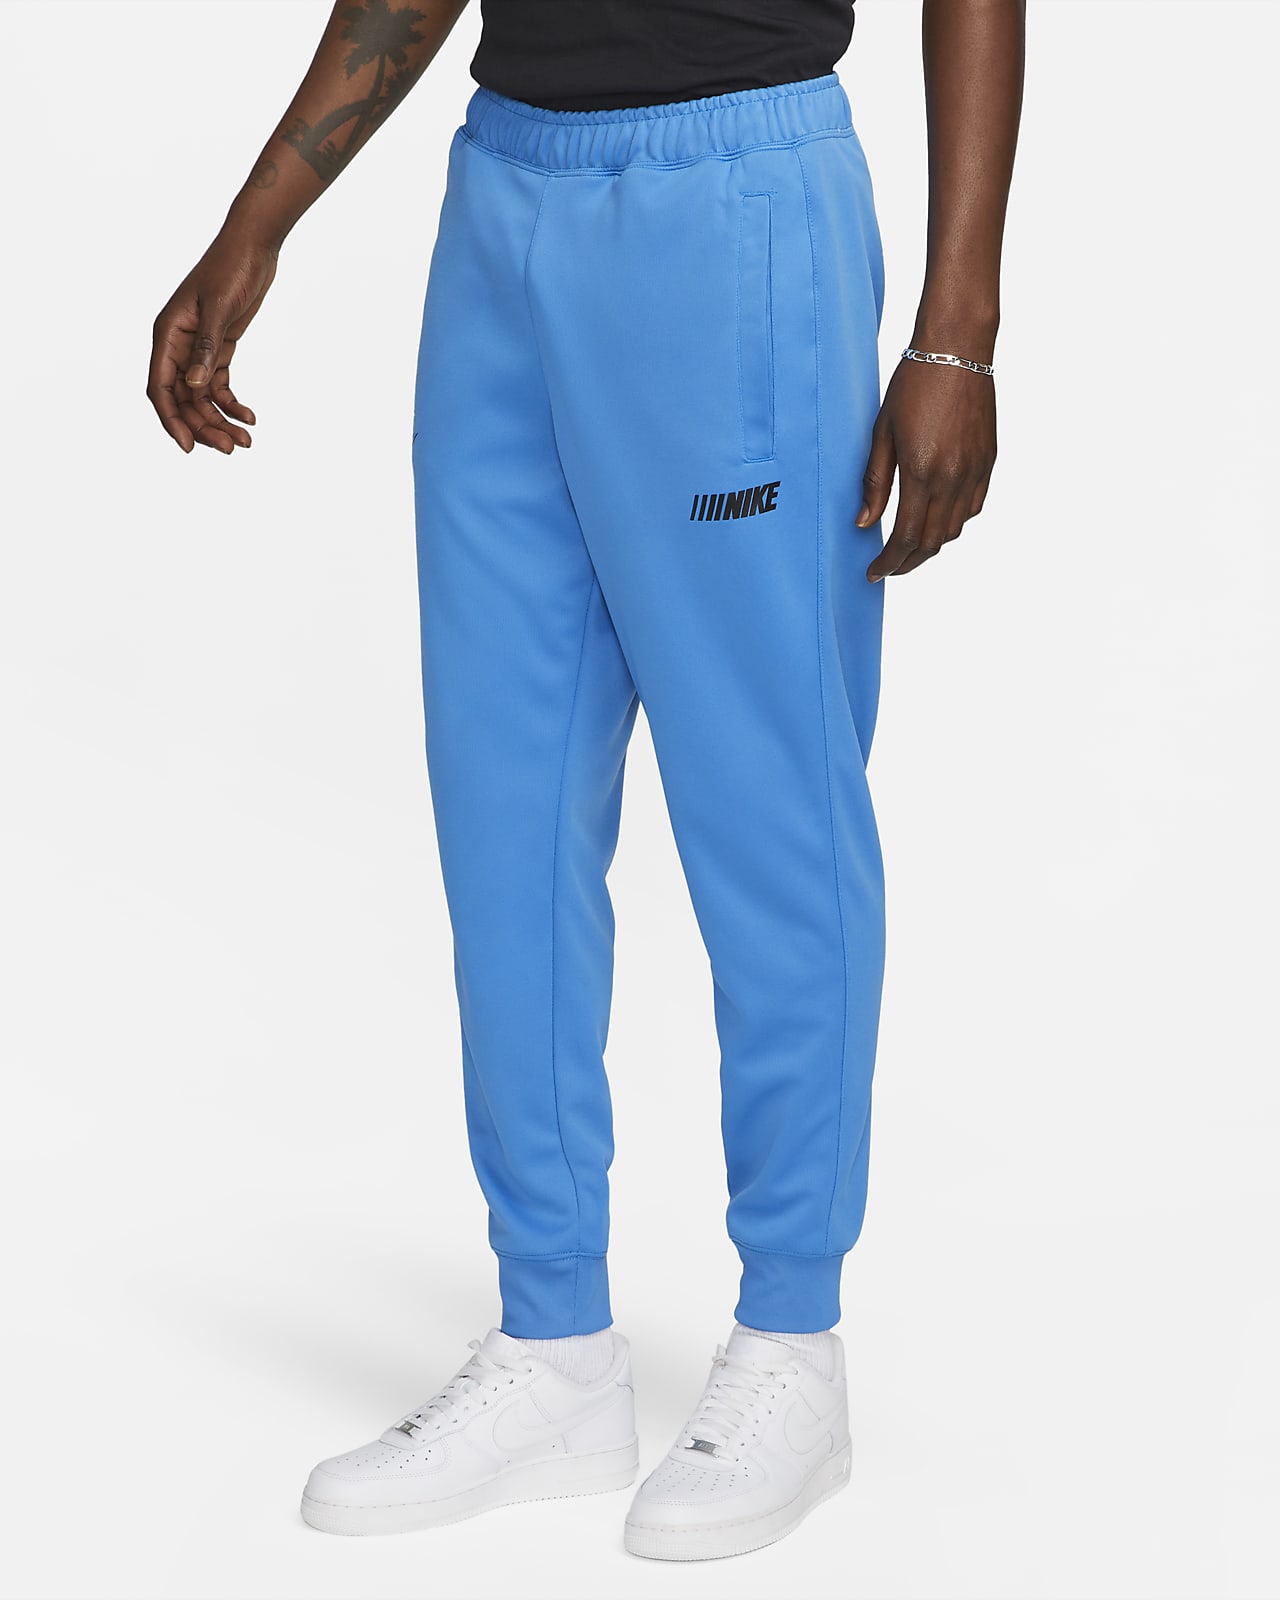 Interesante más binario Nike Sportswear Standard Issue Men's Trousers. Nike SI